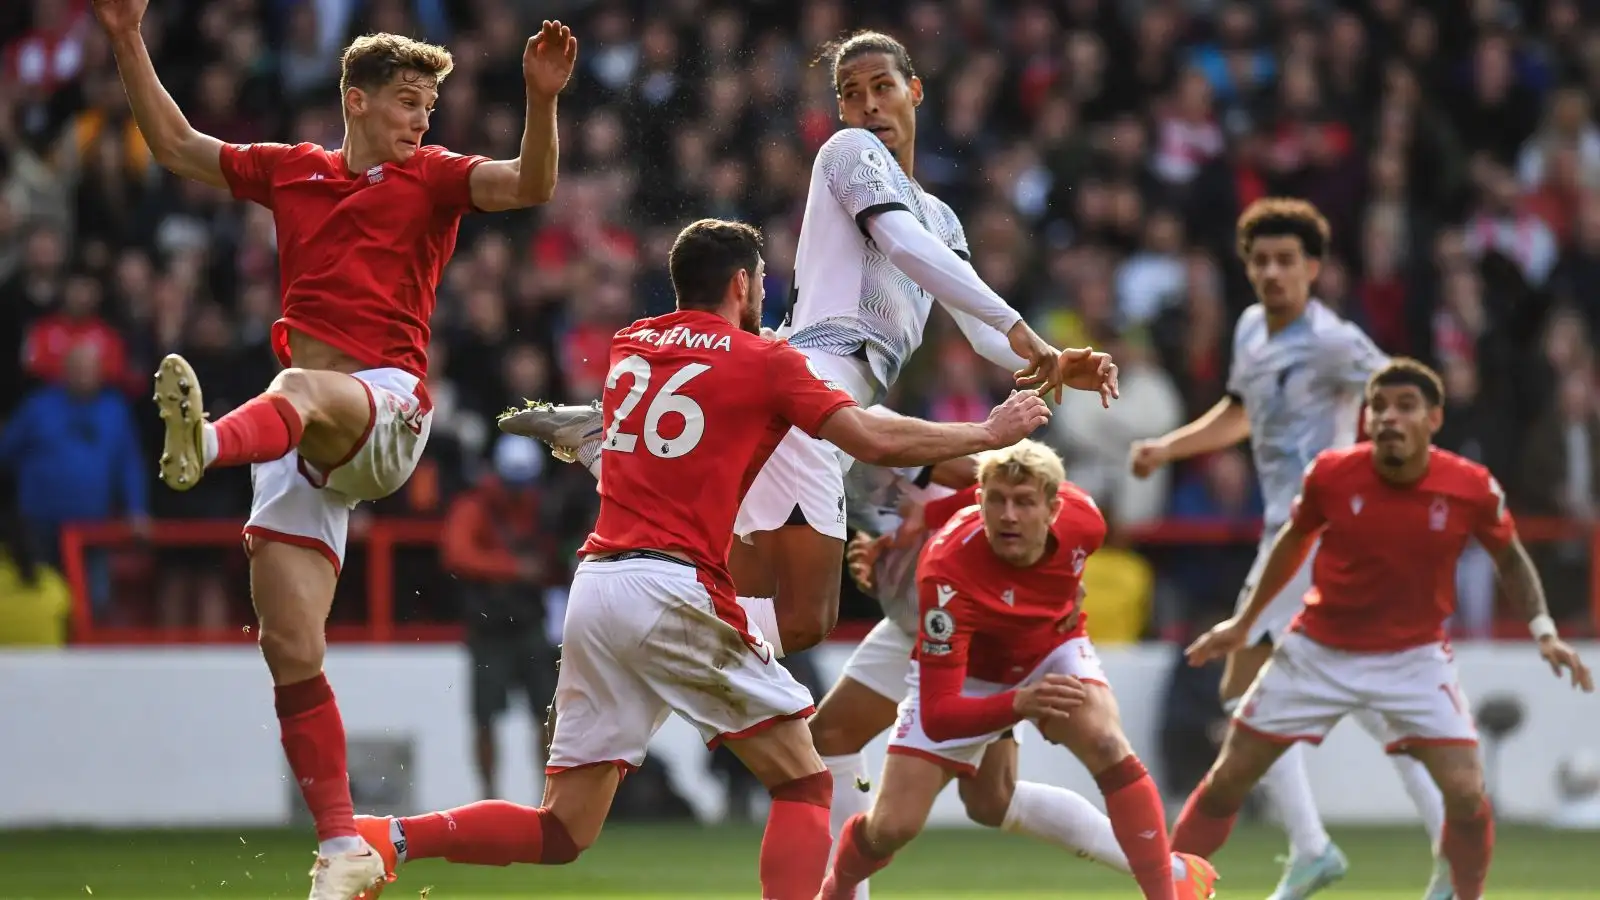 Liverpool defender Virgil van Dijk heads the ball